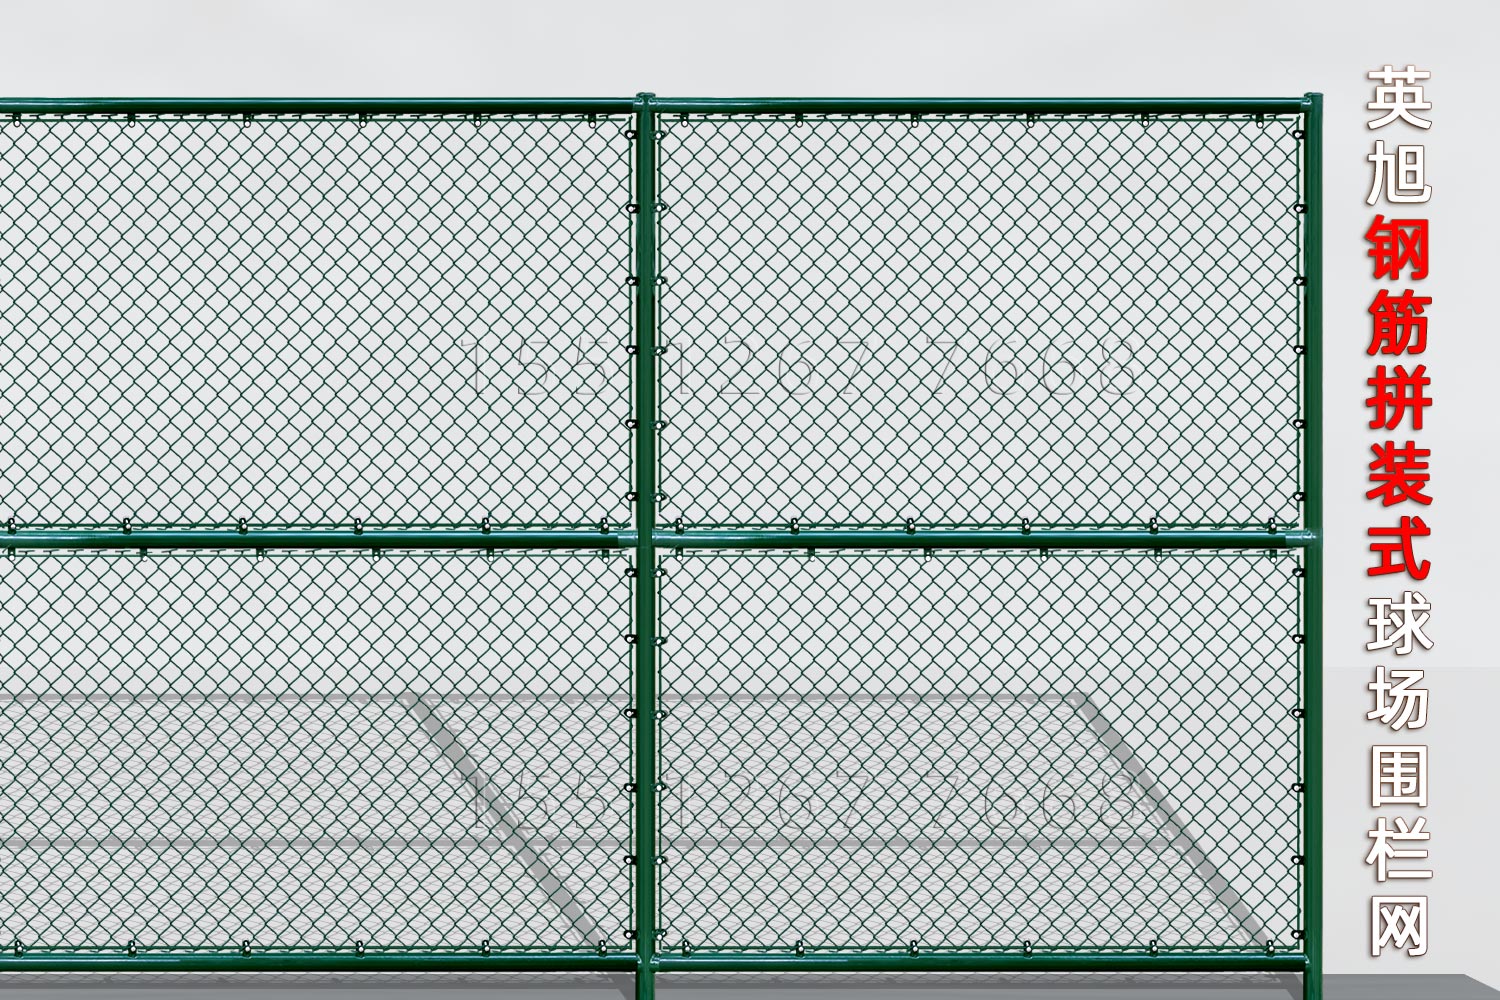 北京钢筋组装式球场围栏网